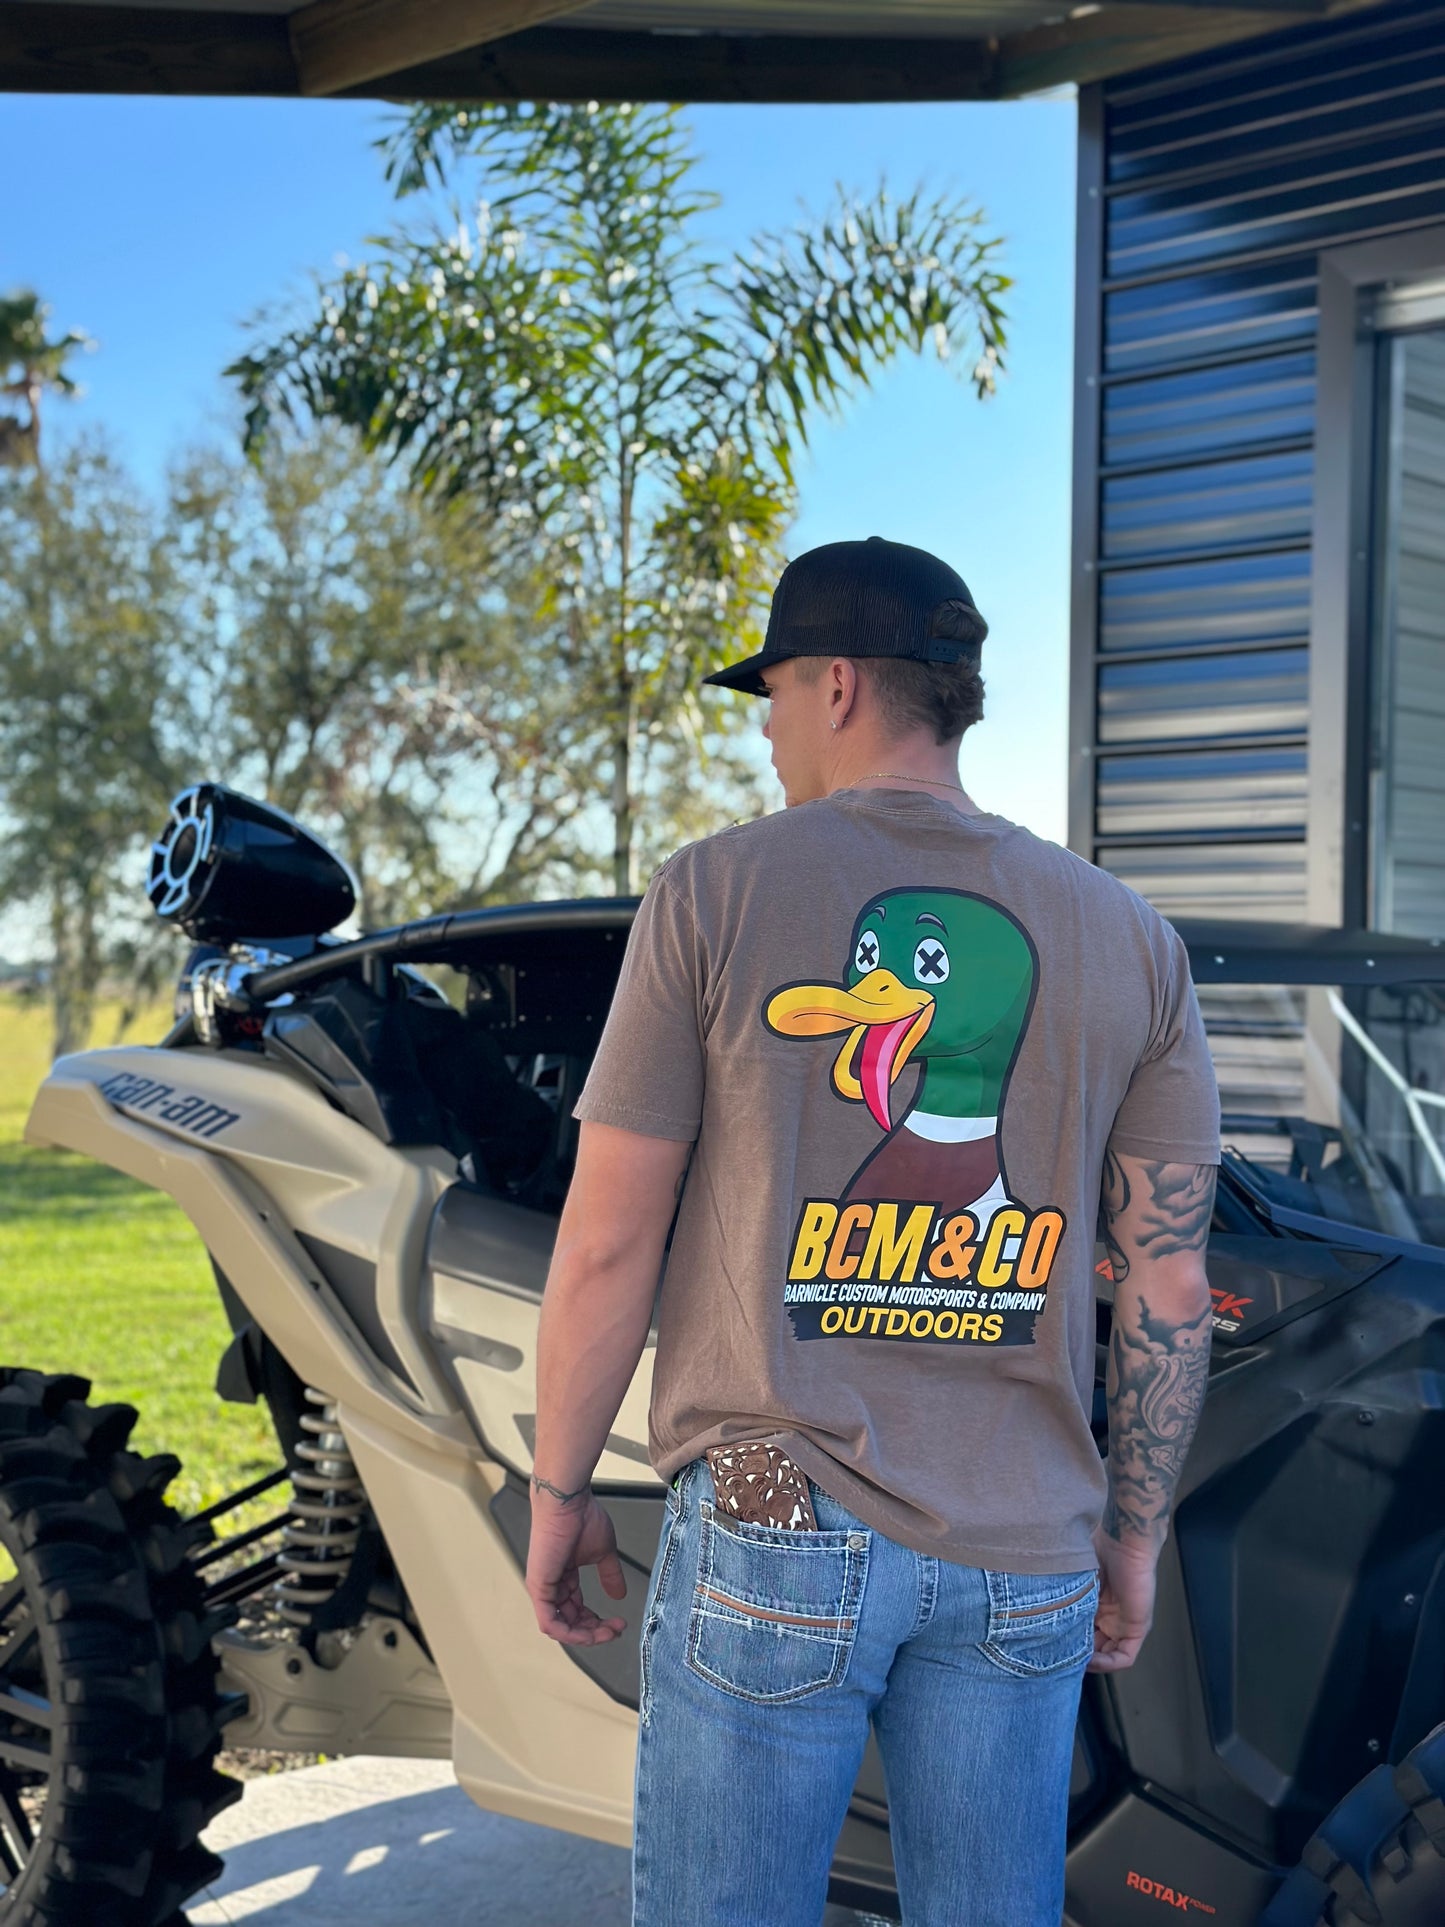 BCM & Co Outdoors Duck T-Shirt 🦆